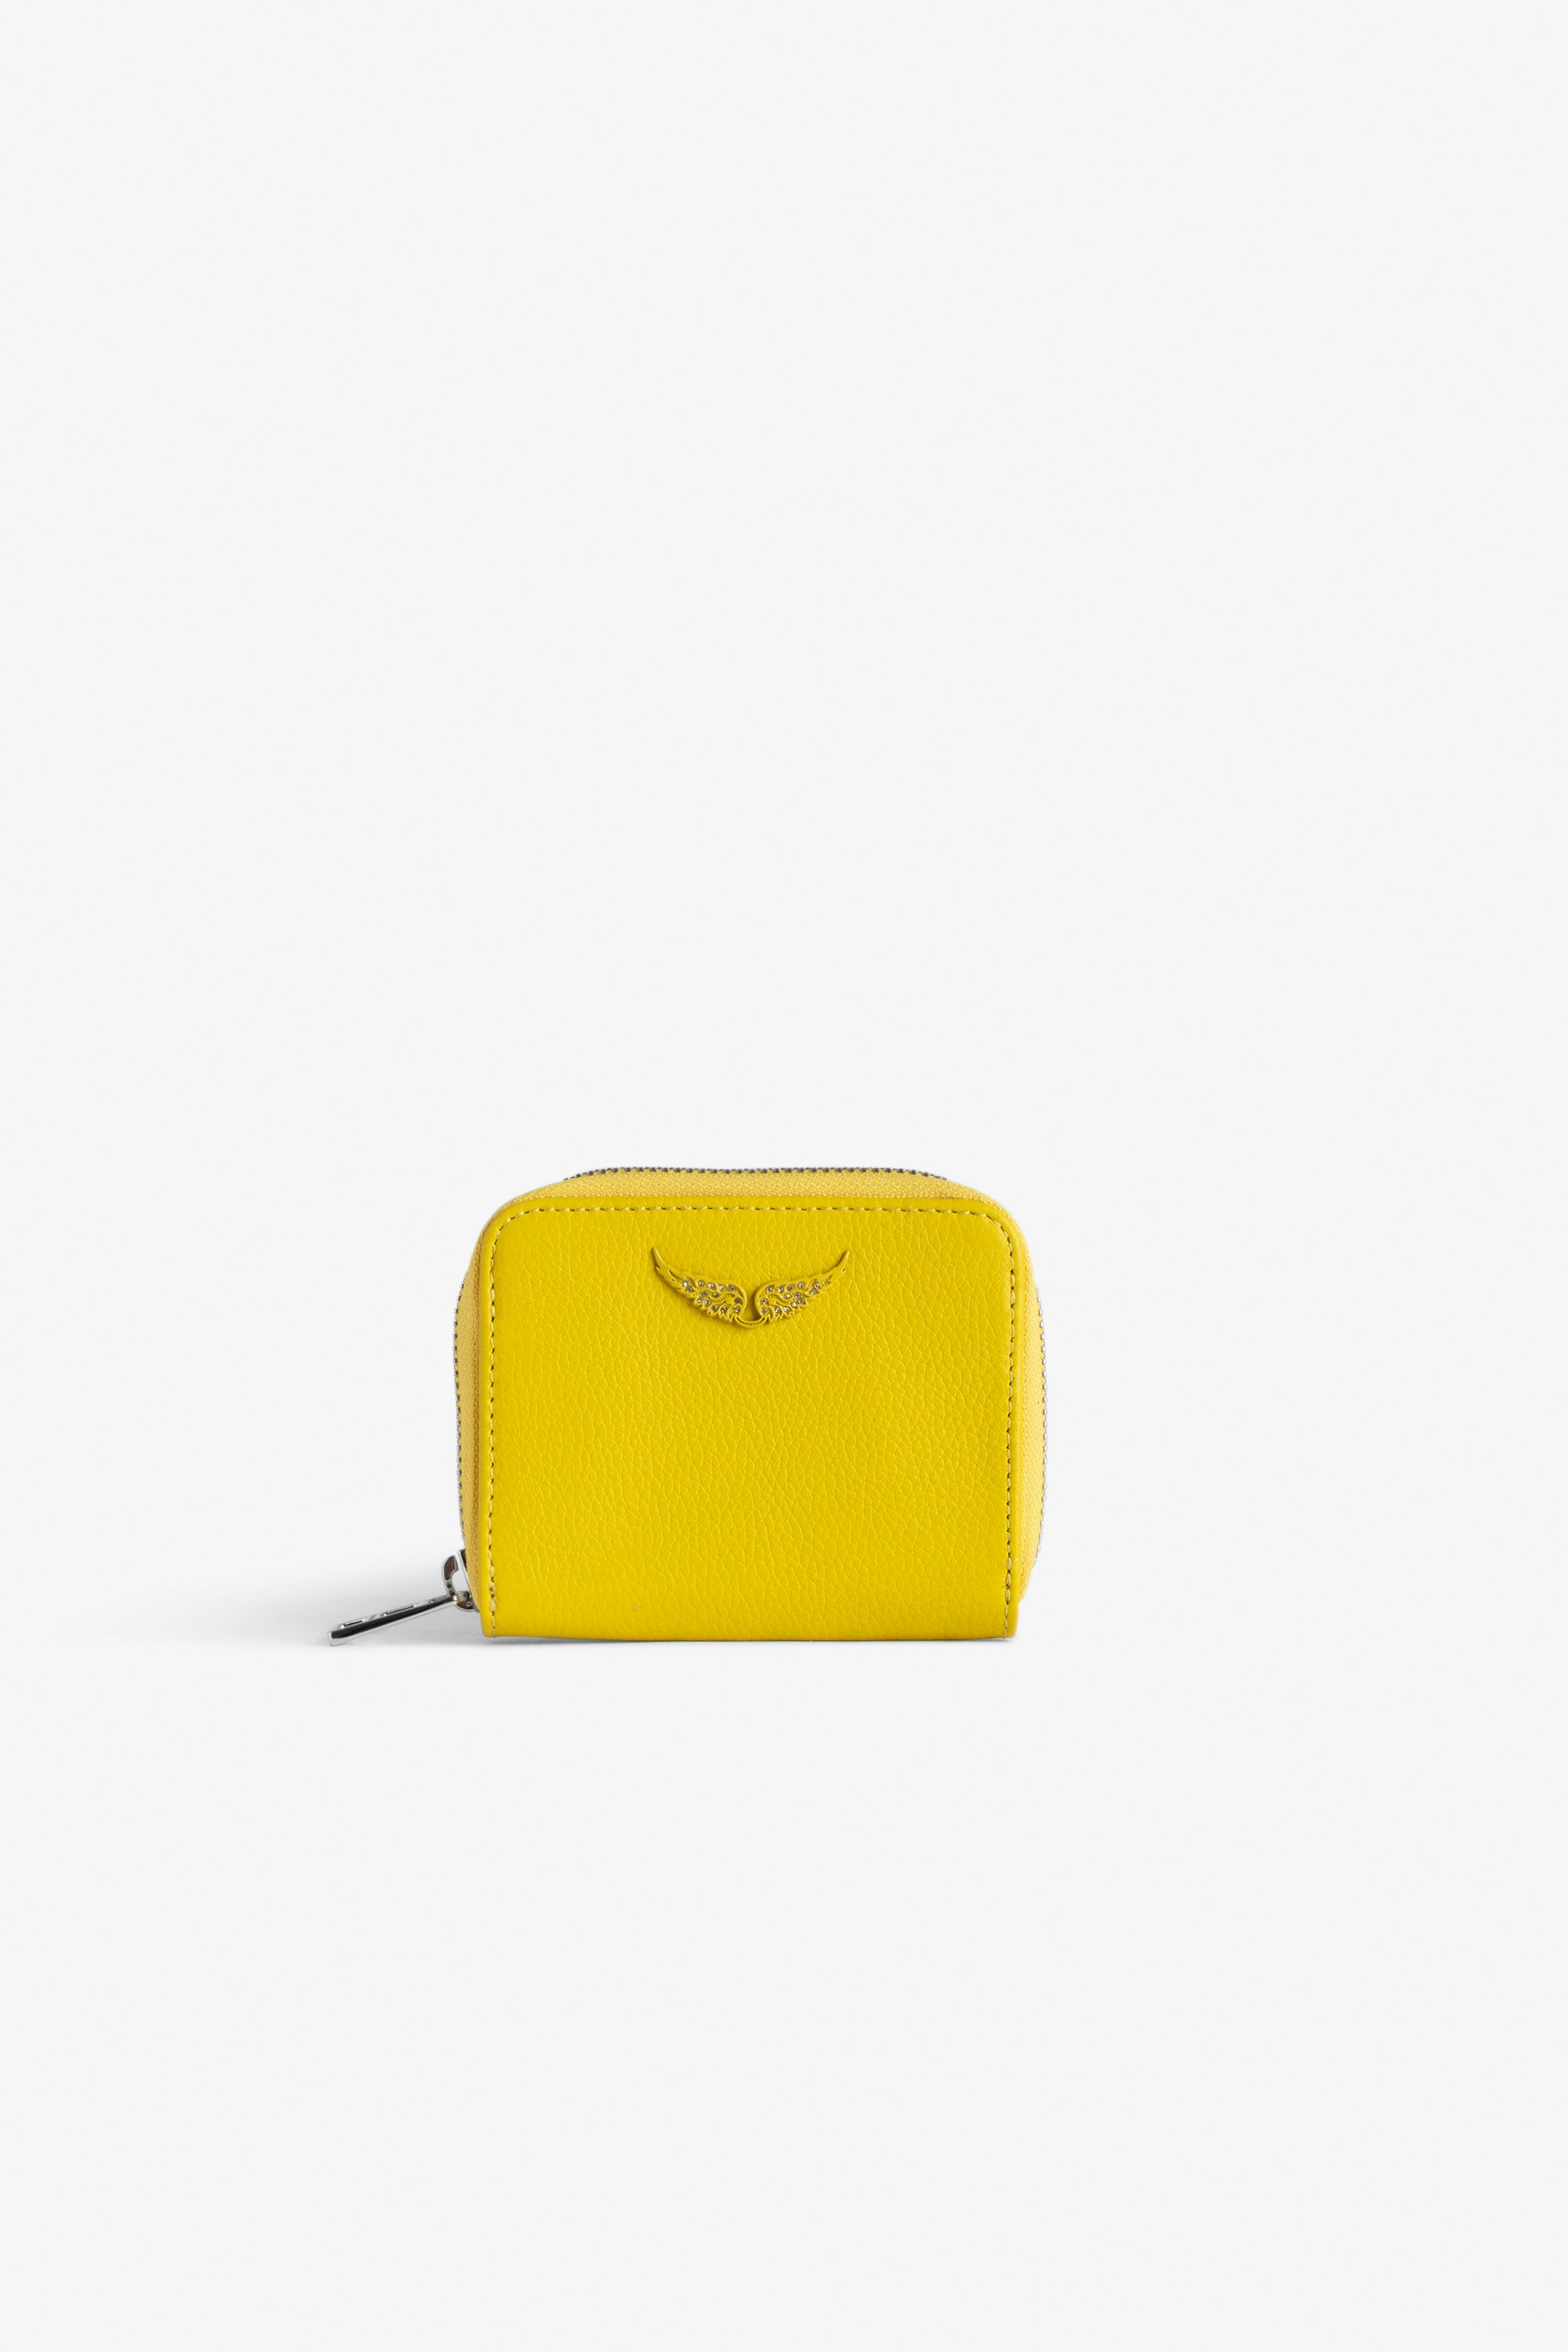 Monedero Mini ZV - Cartera amarilla de piel granulada con colgante de alas con strass para mujer.